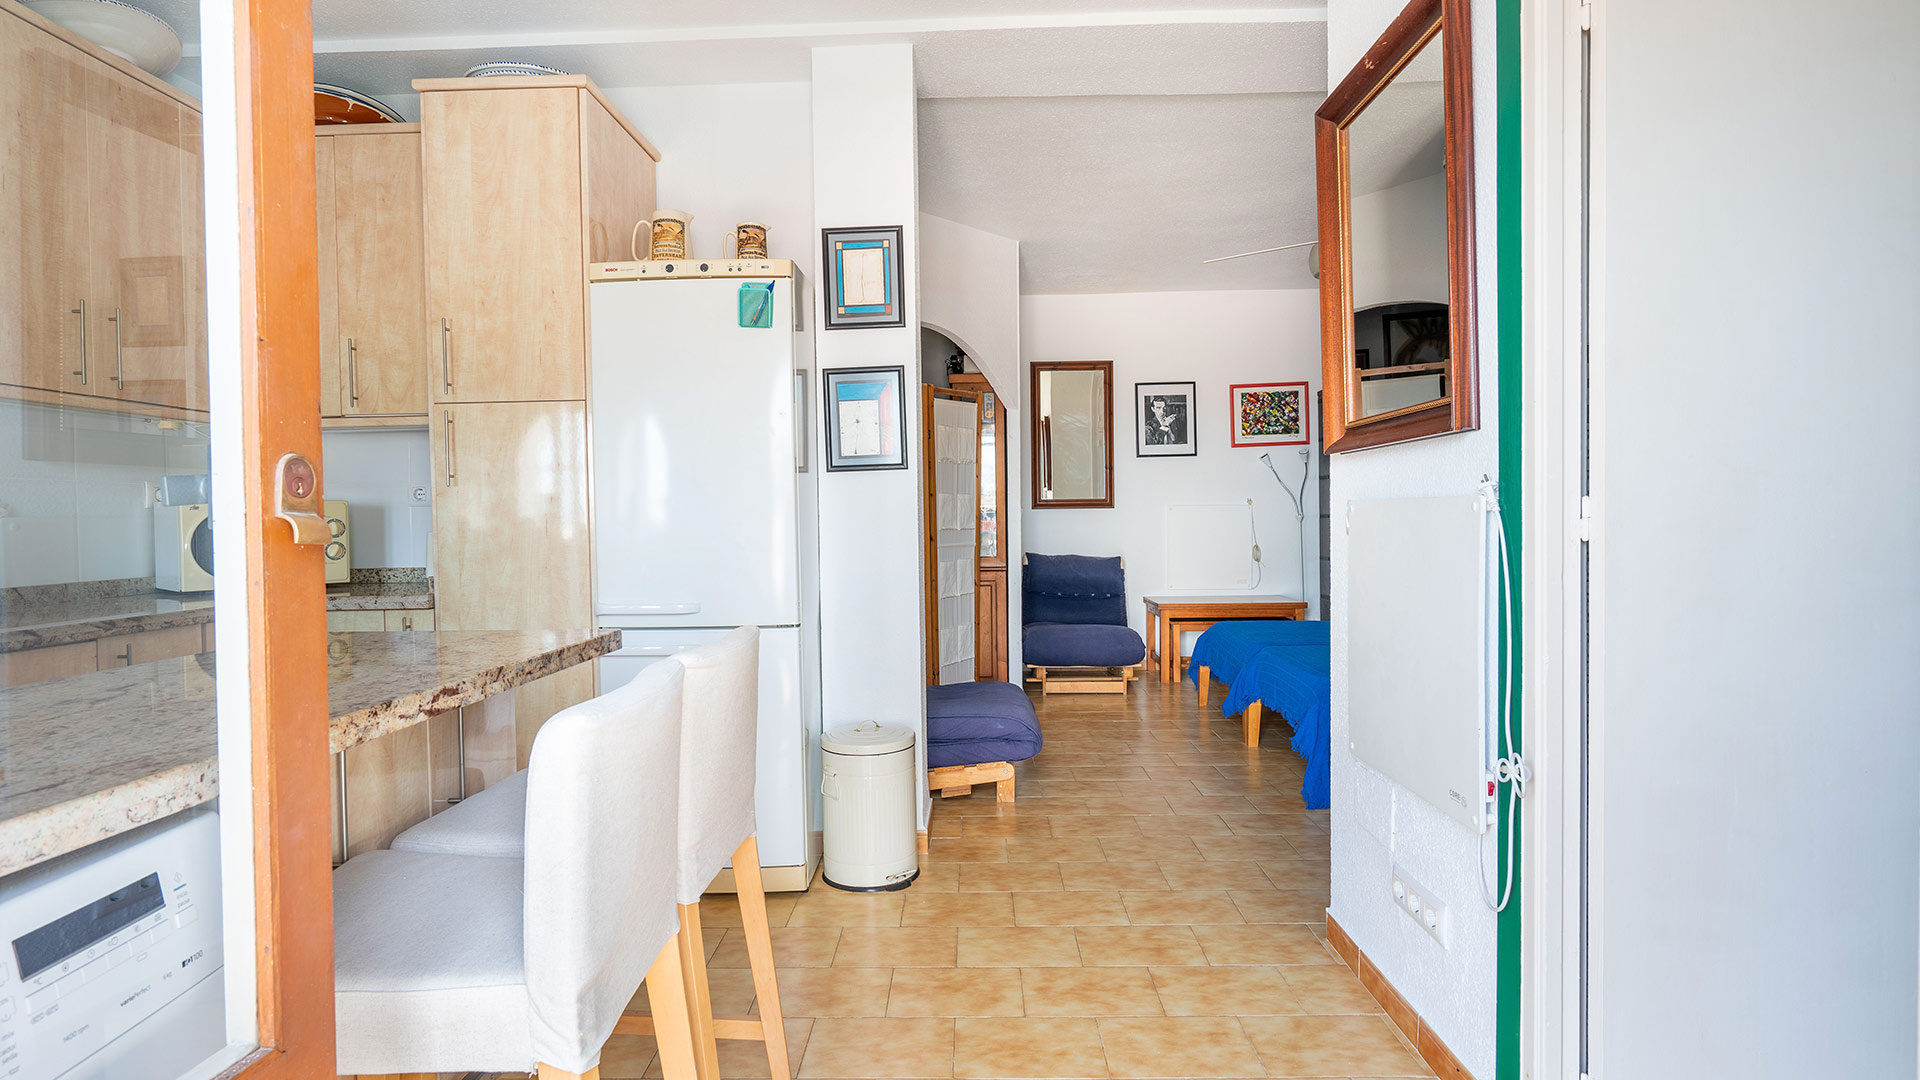 Una vivienda de las muchas disponibles para alquiler vacacional en el pueblo de San José Almería